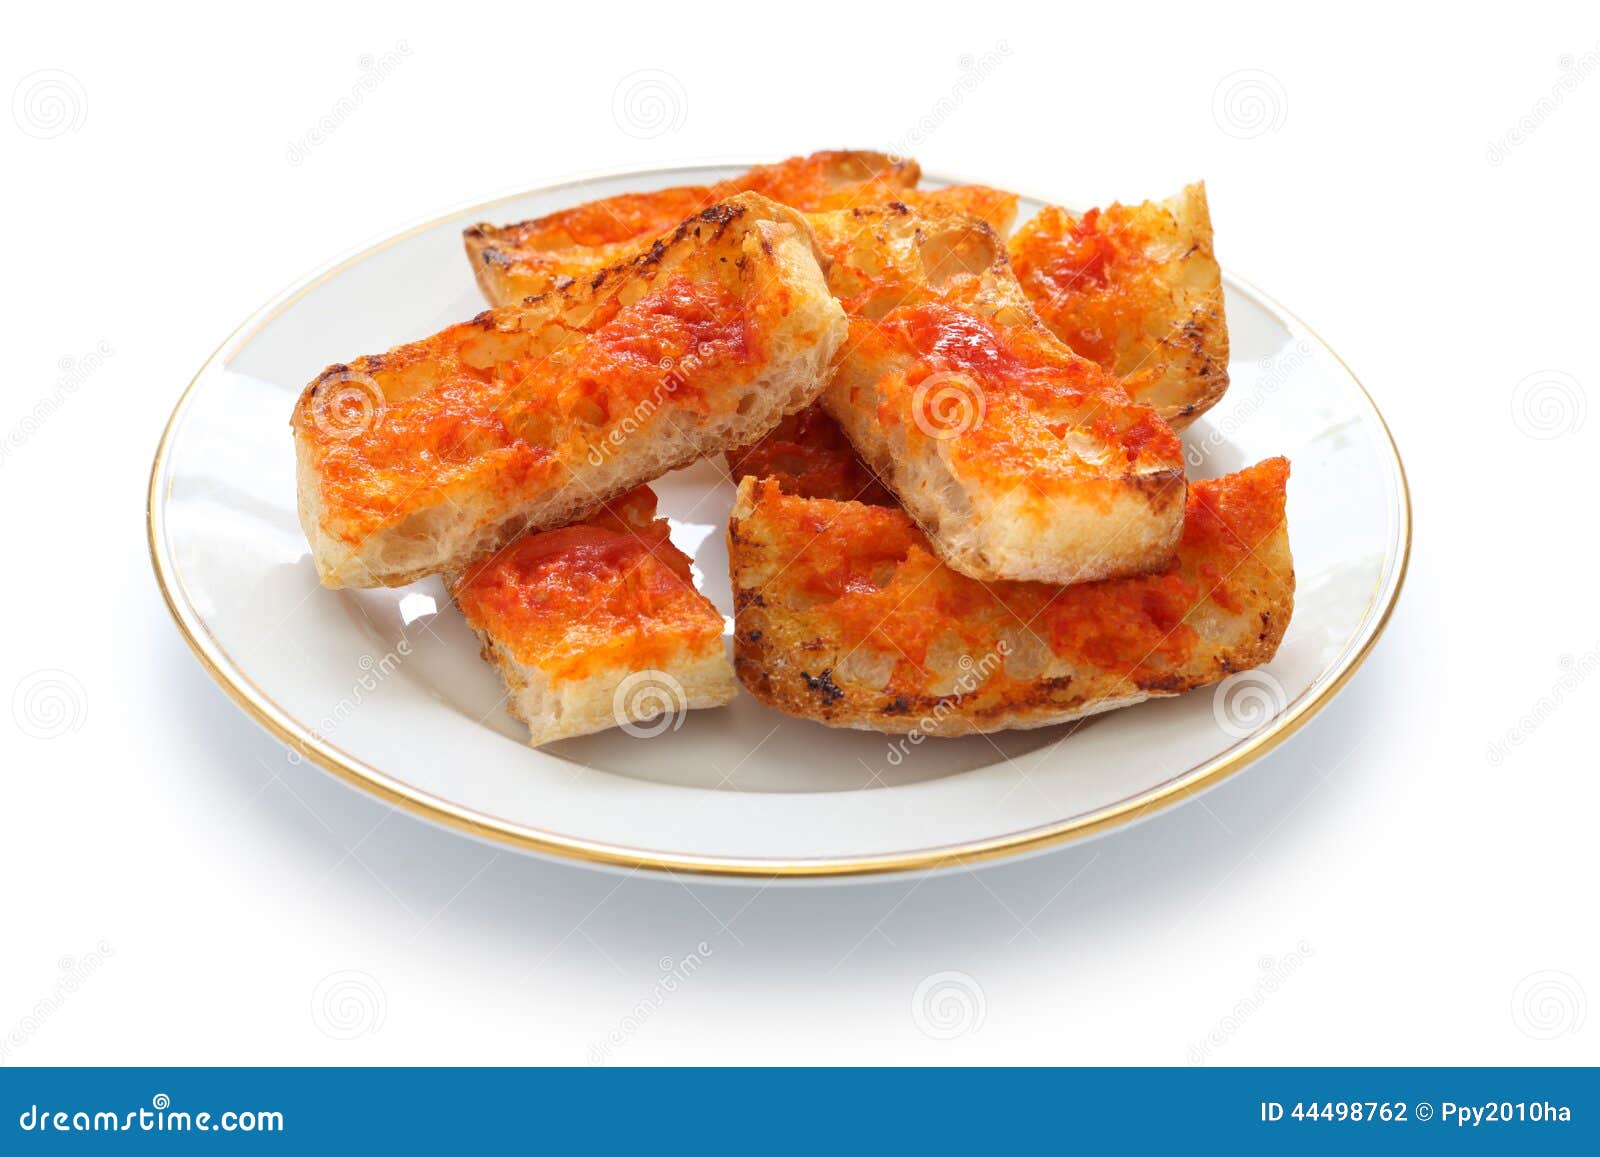 pan con tomate, spanish tomato bread